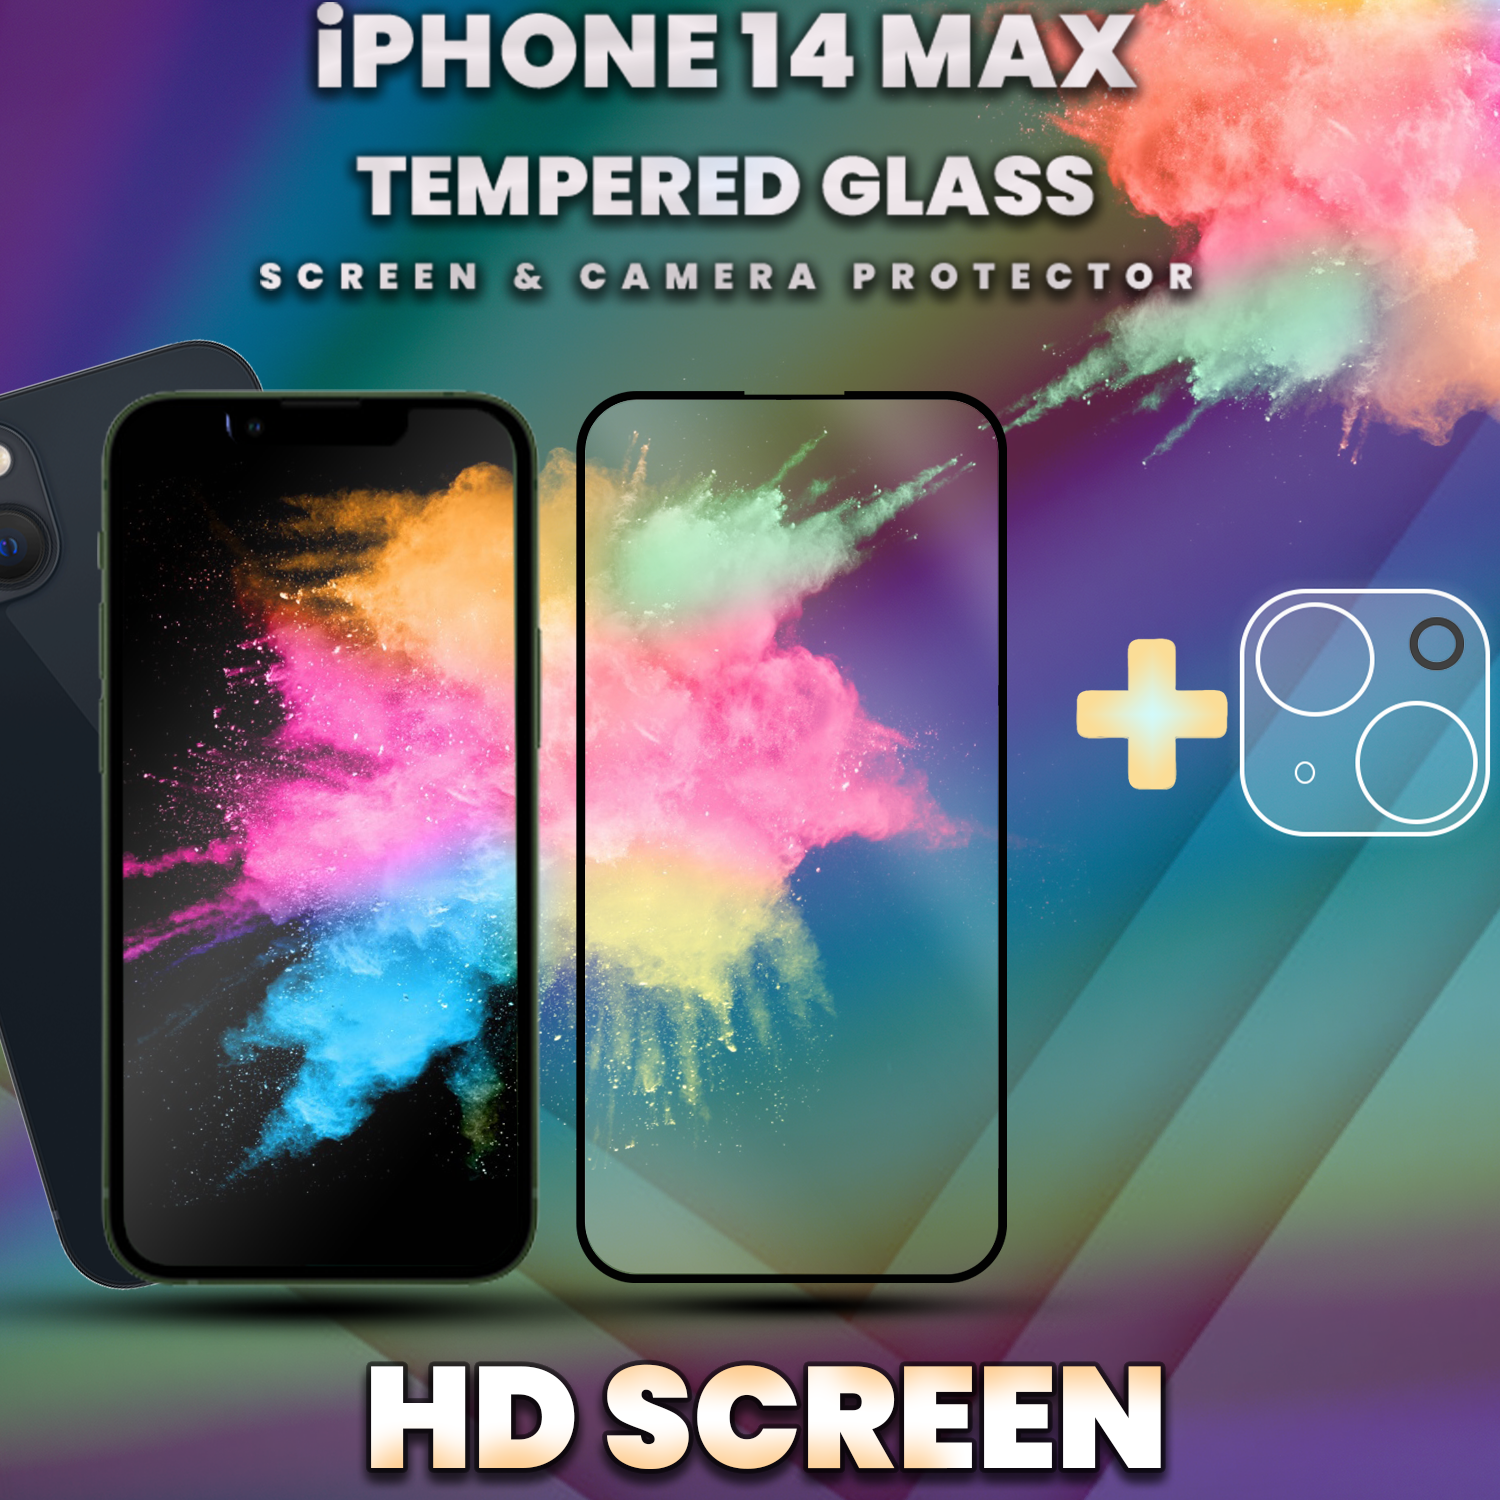 iPhone 14 Max - skärmskydd & linsskydd - härdat glas 9H - 3D